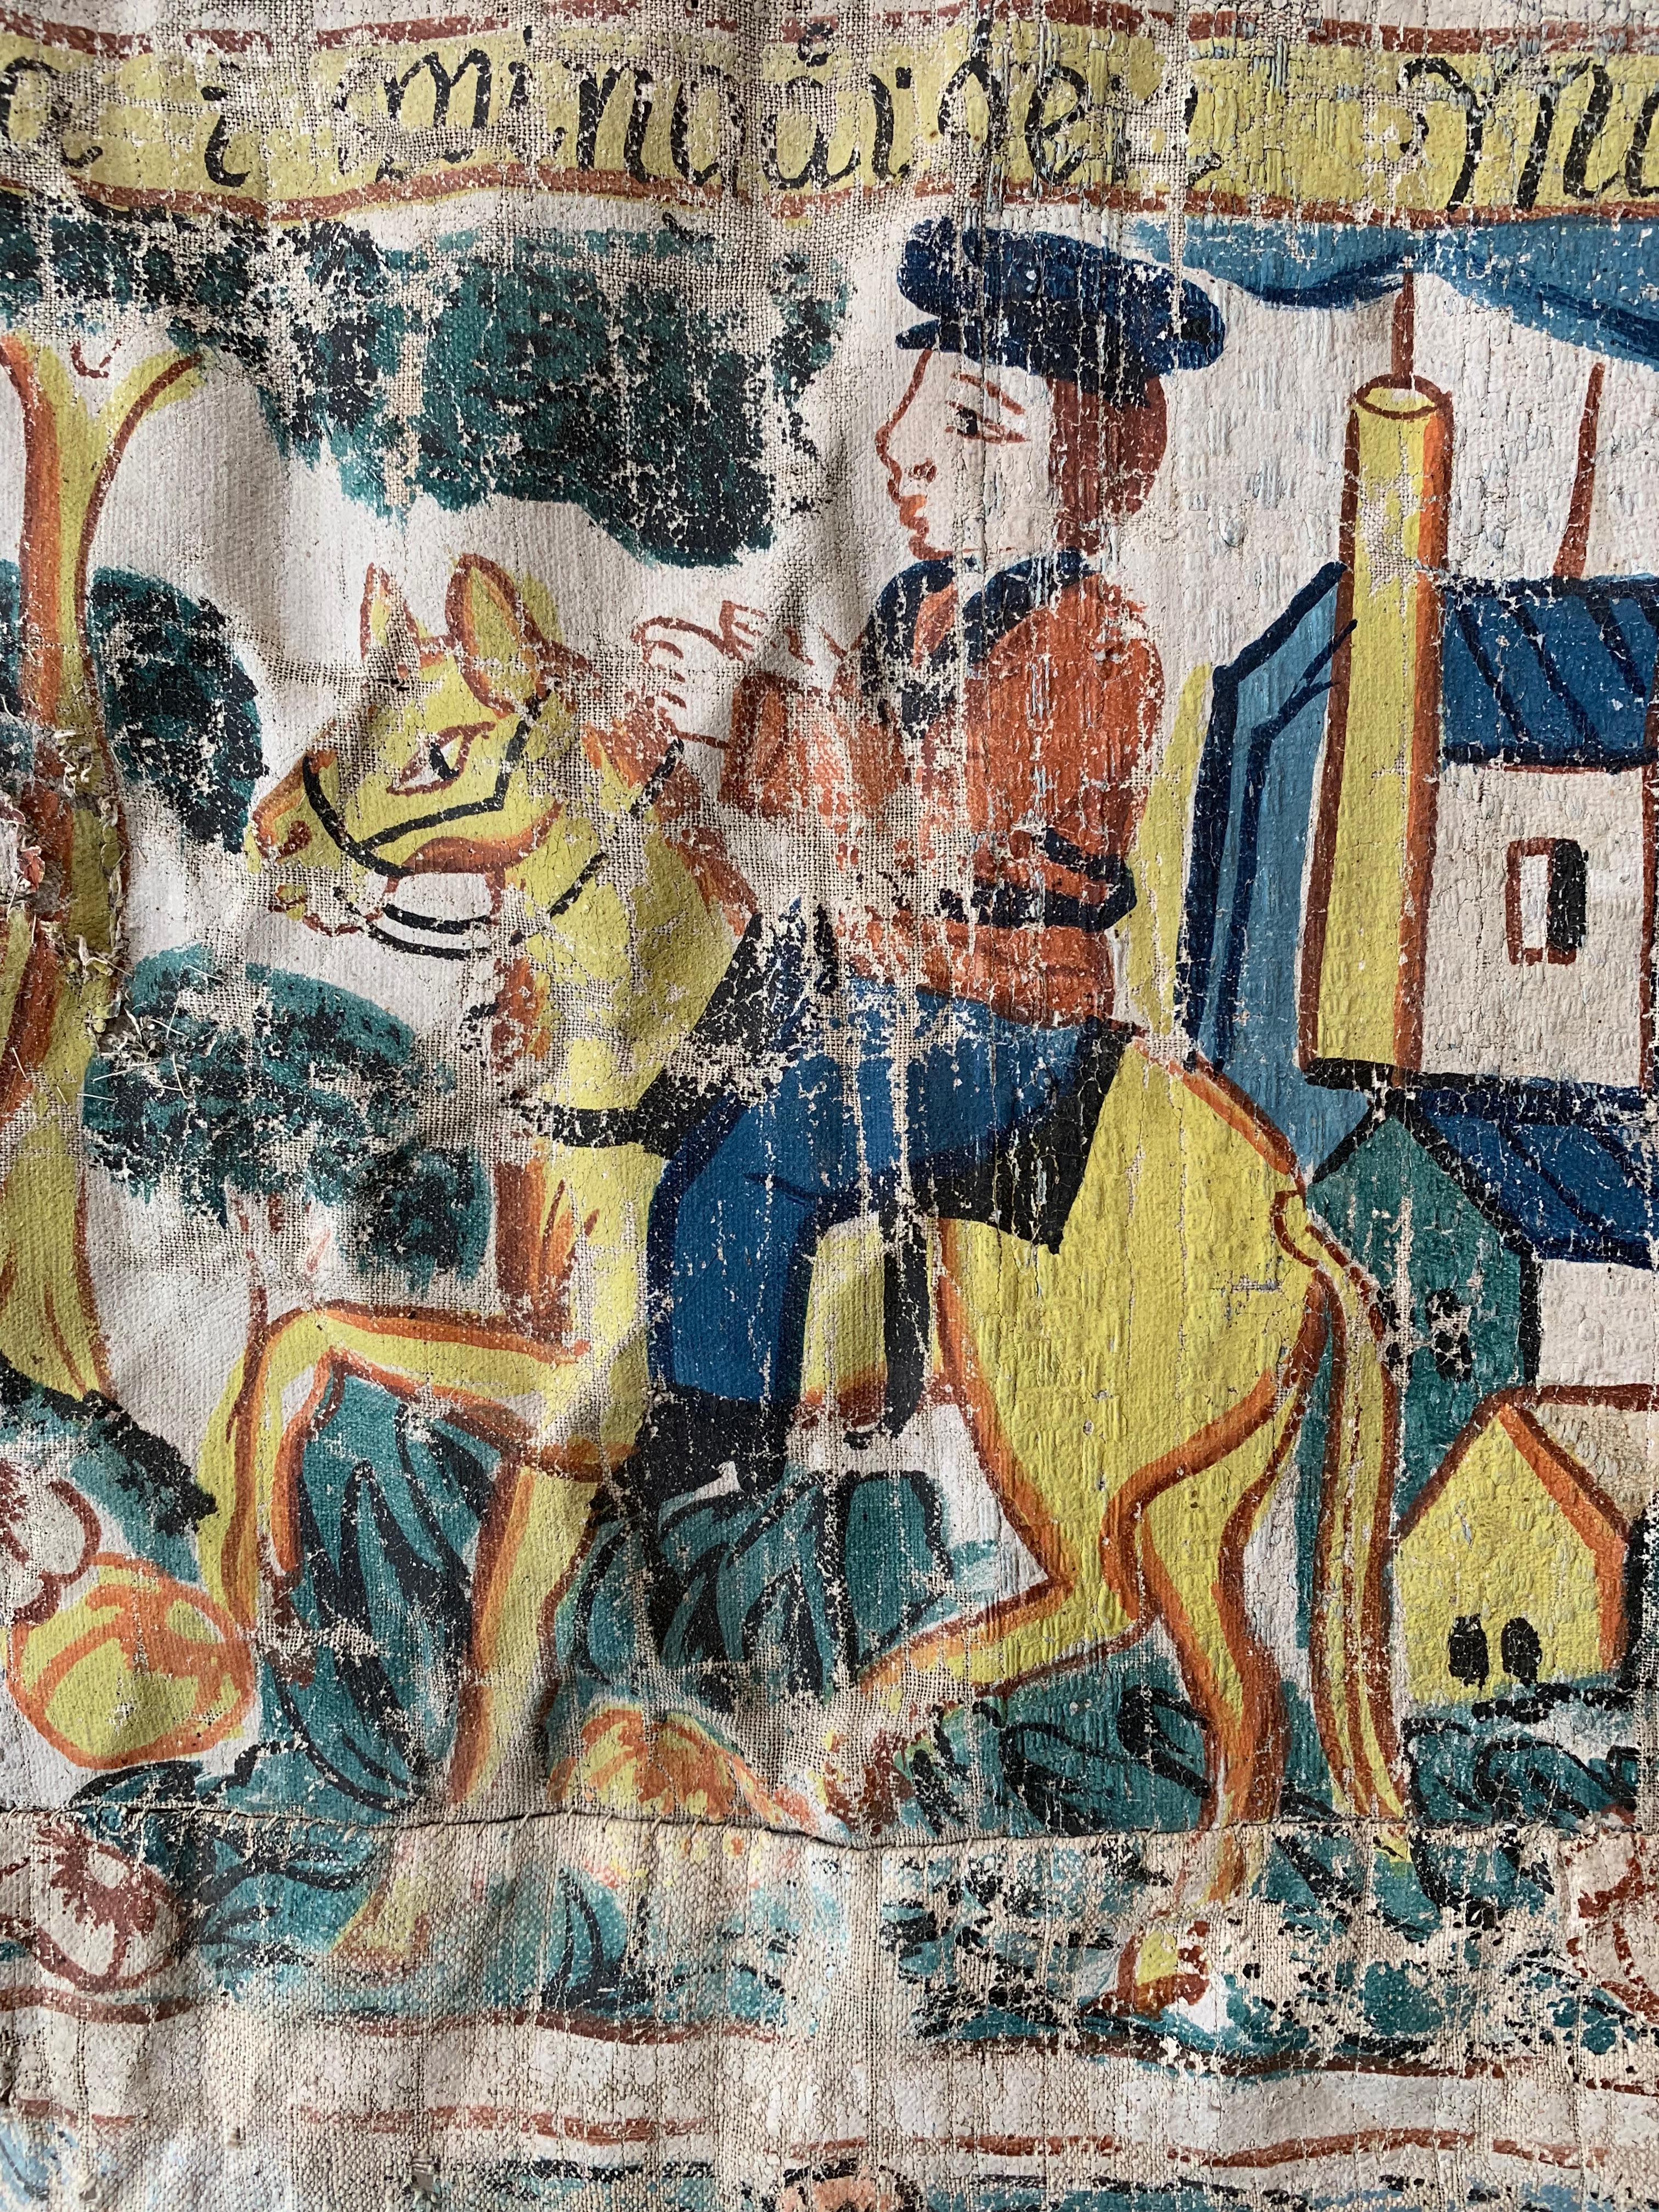 Grande tenture murale décorative d'art populaire suédois - Bonad - qui pourrait provenir d'une église.
Peinte sur toile avec des pigments naturels, elle représente des thèmes bibliques naïfs, traditionnels de ces tentures folkloriques, qui étaient